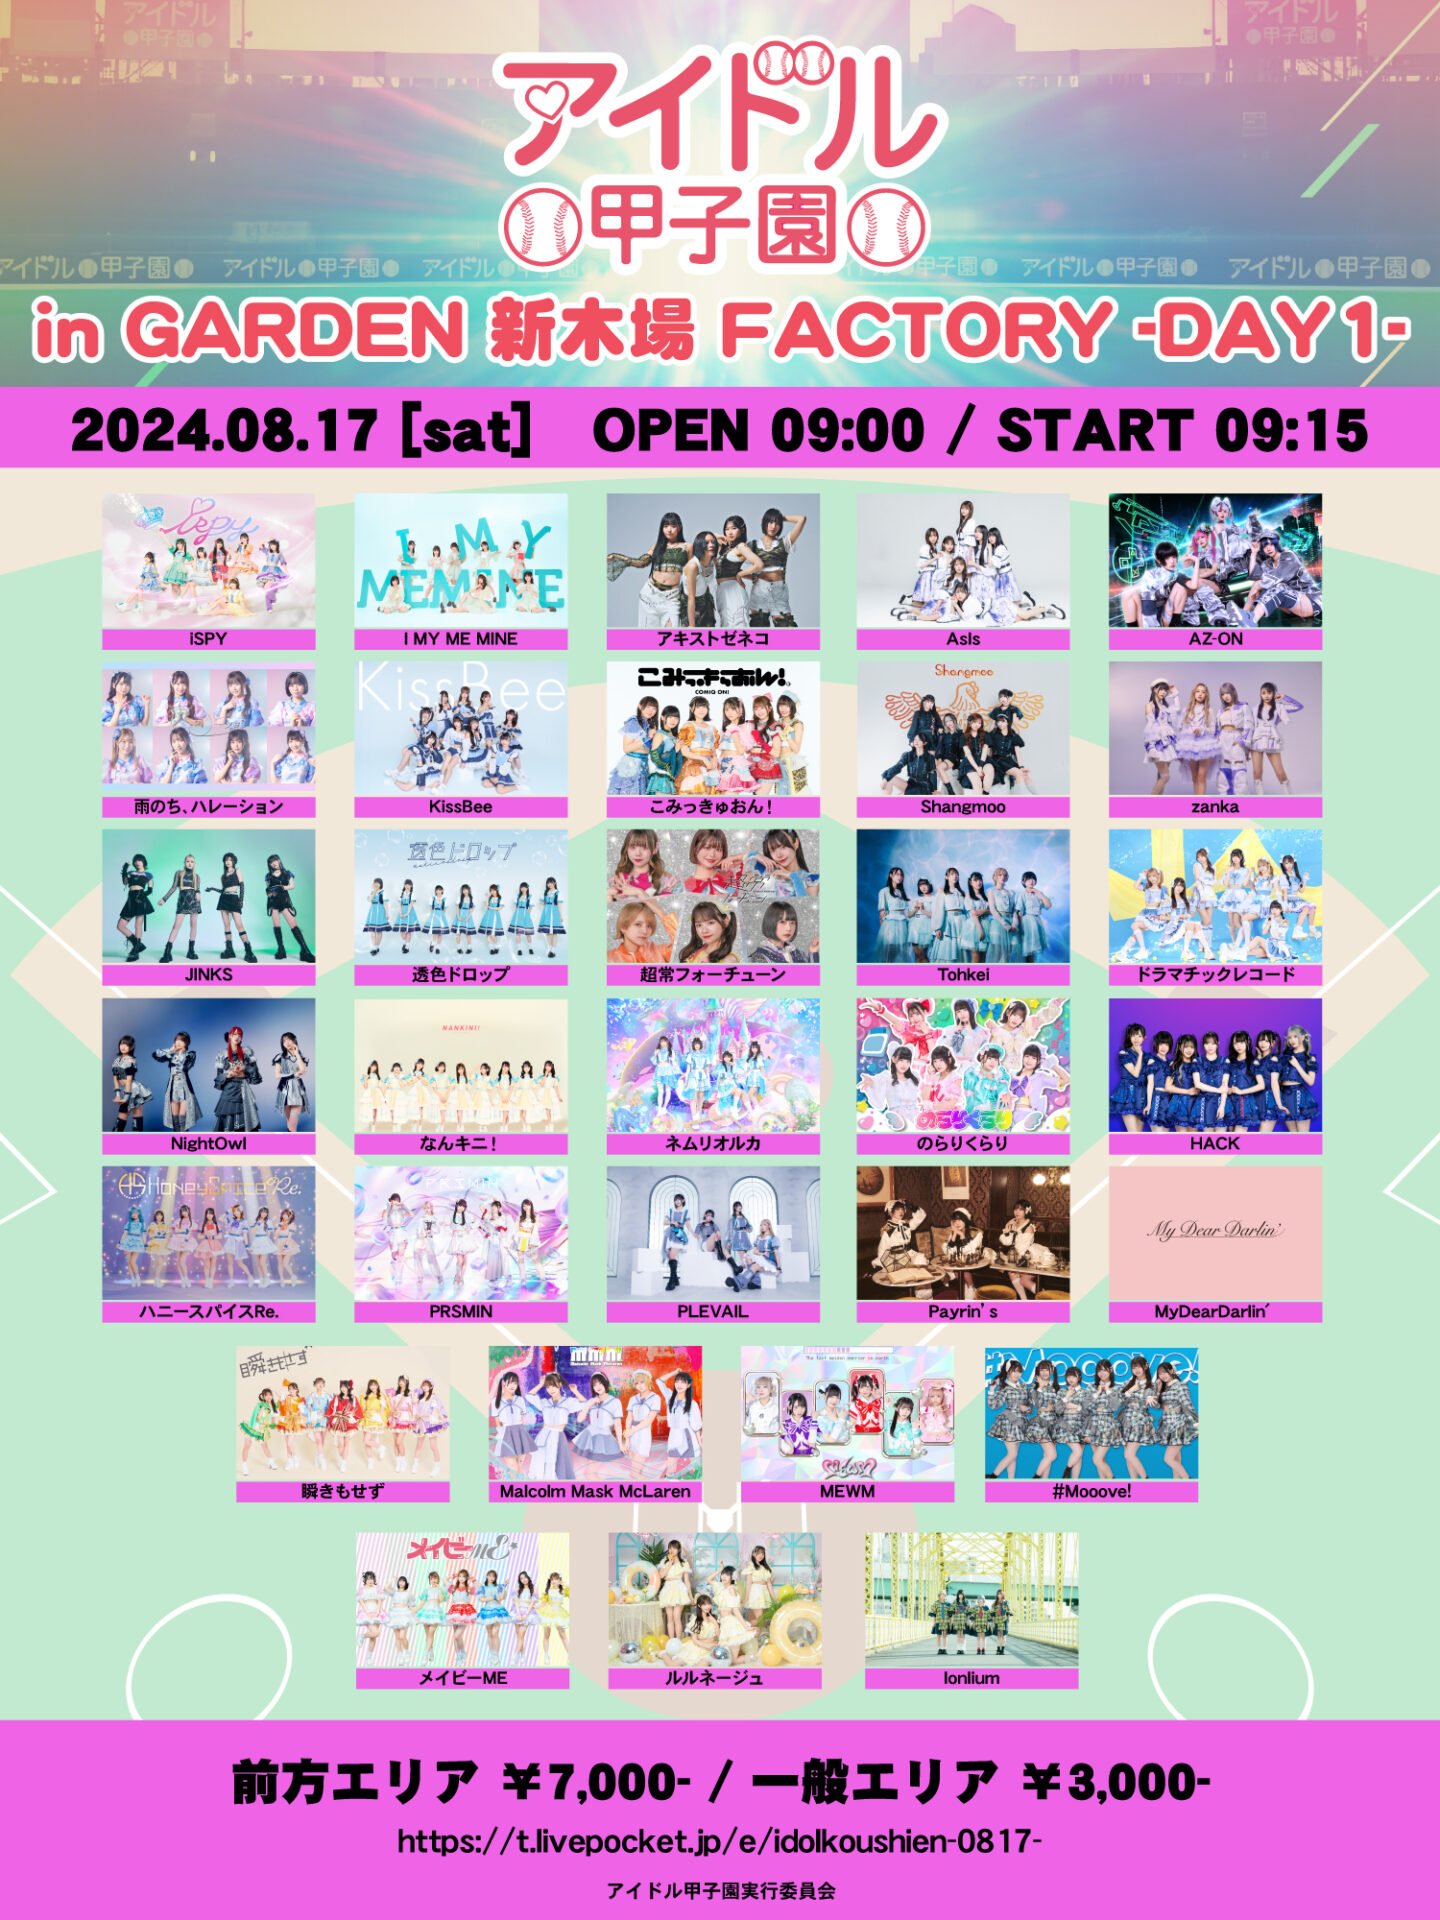 「アイドル甲子園 in GARDEN 新木場 FACTORY」-DAY1-